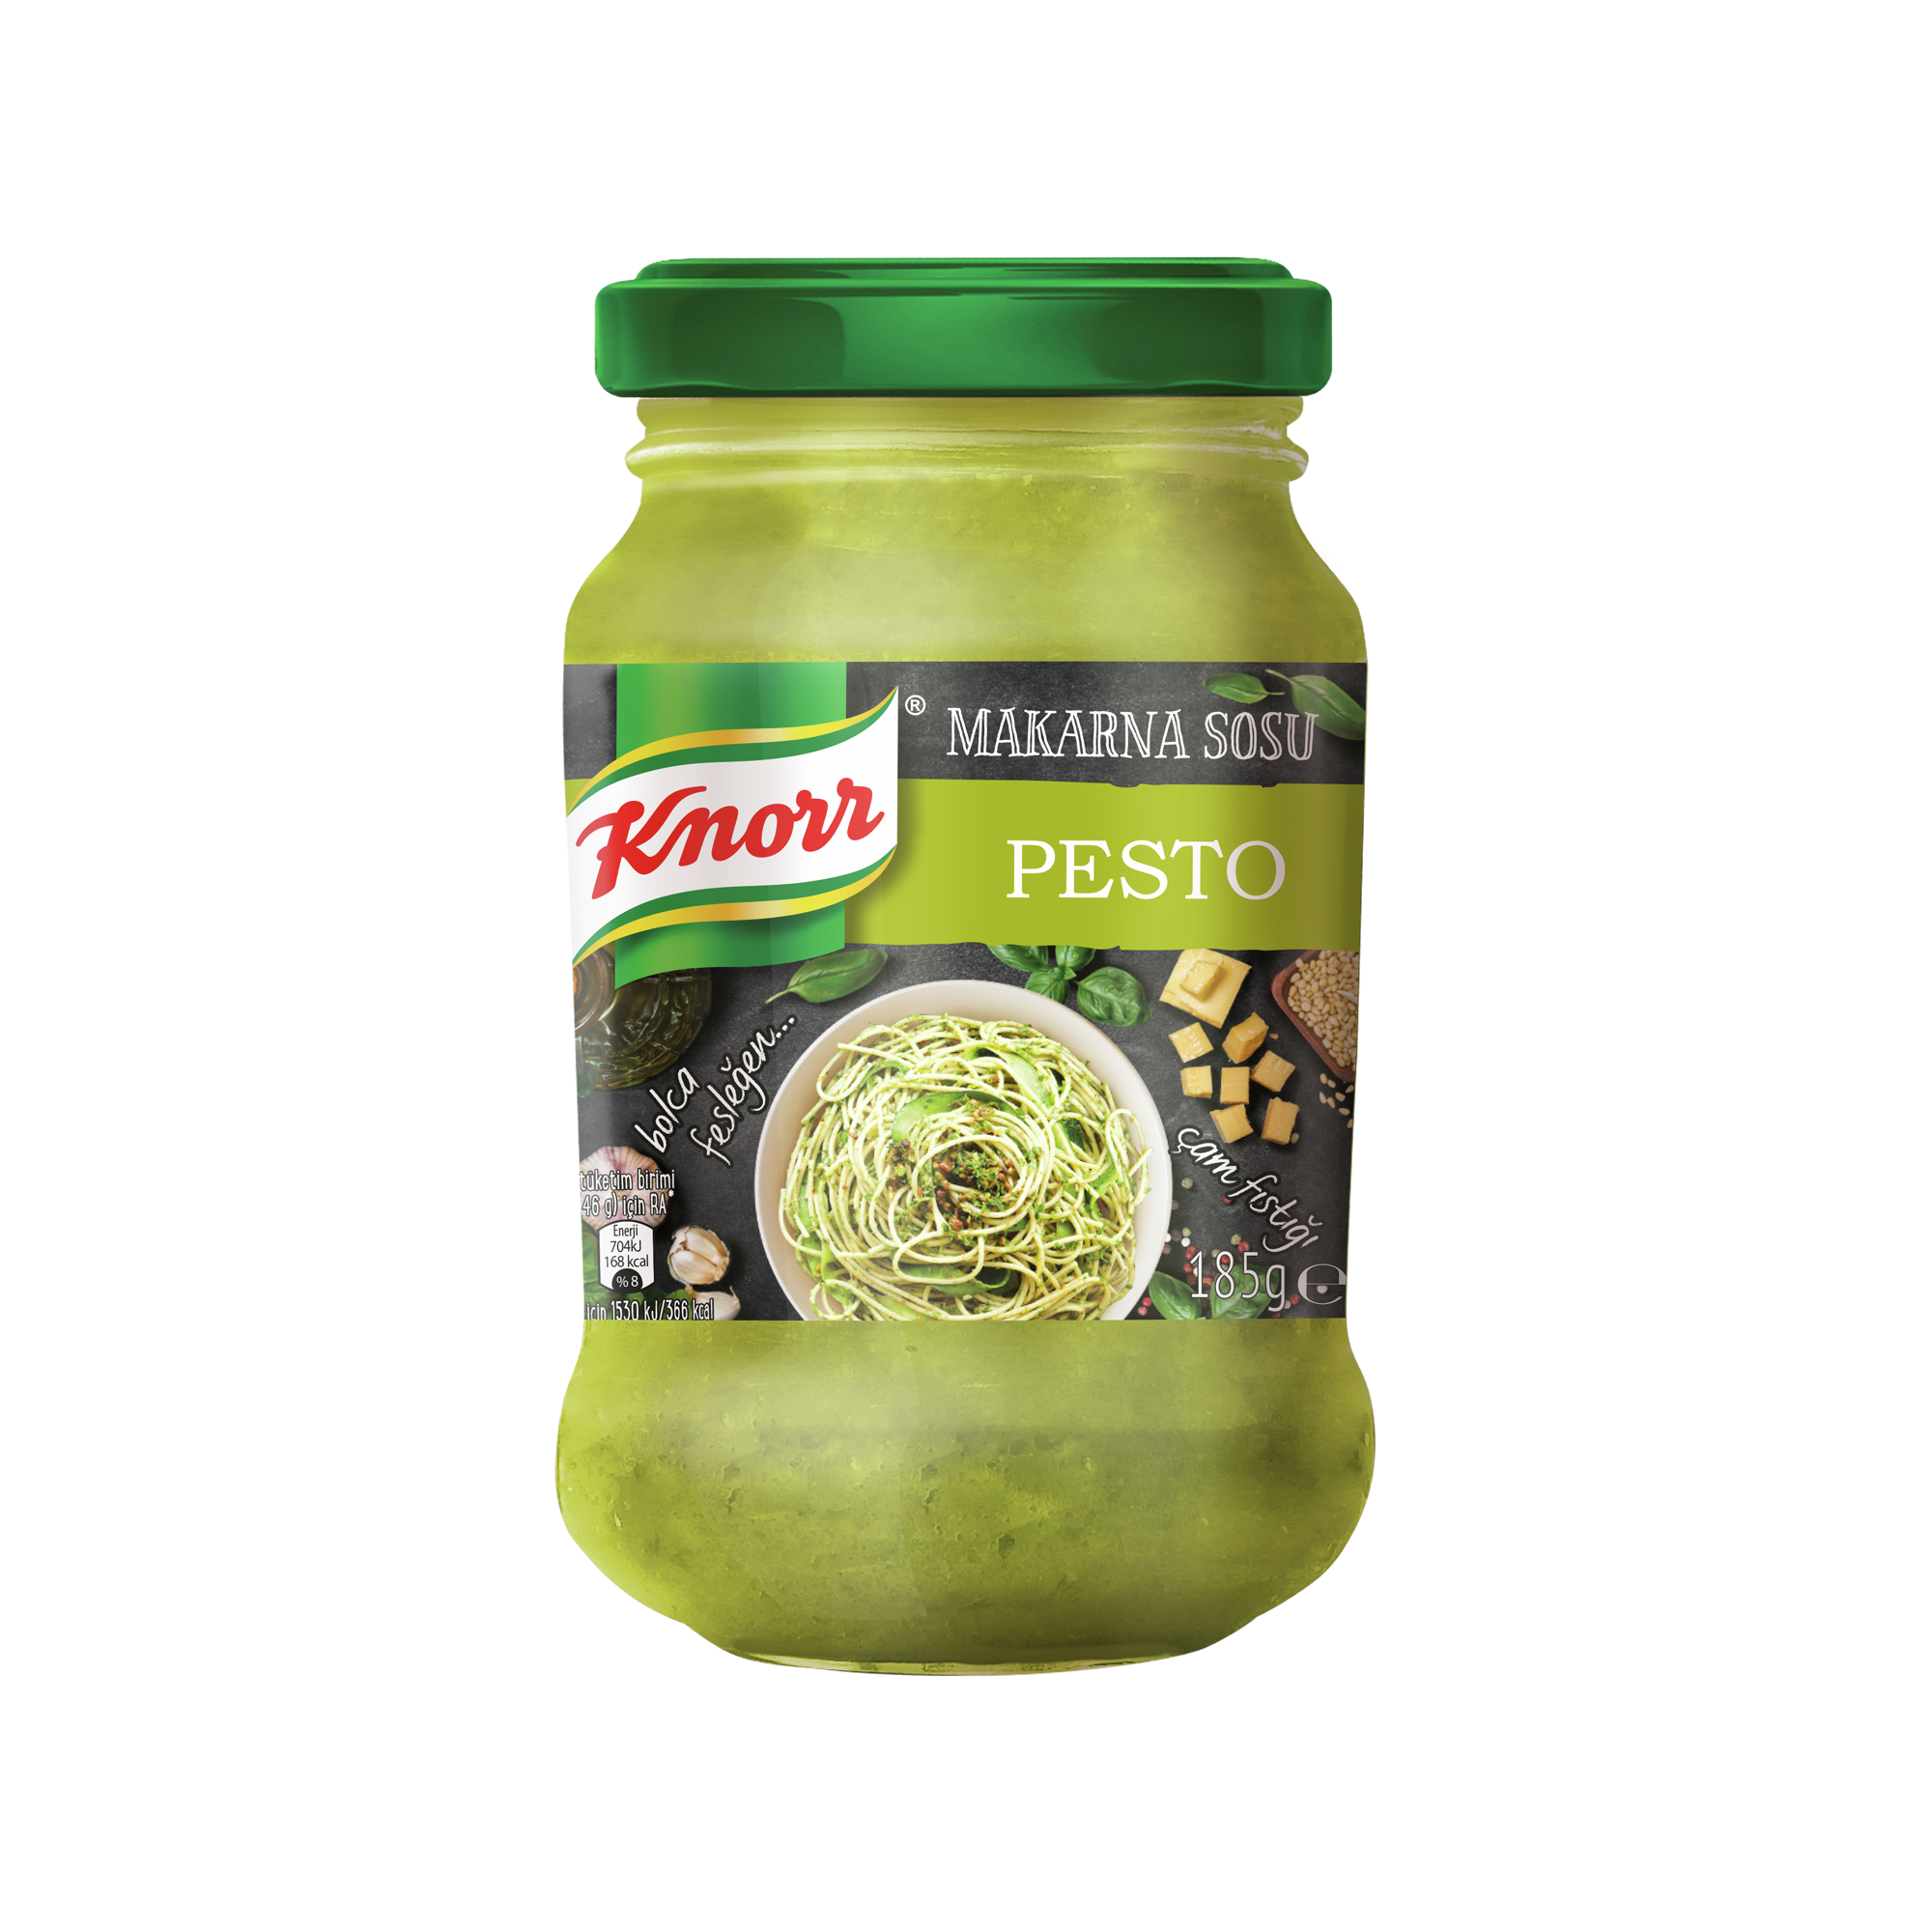 Knorr Fesleğen, Peynir, Kaju Fıstığı Ve Çam Fıstıklı Pesto Verde Makarna Sosu